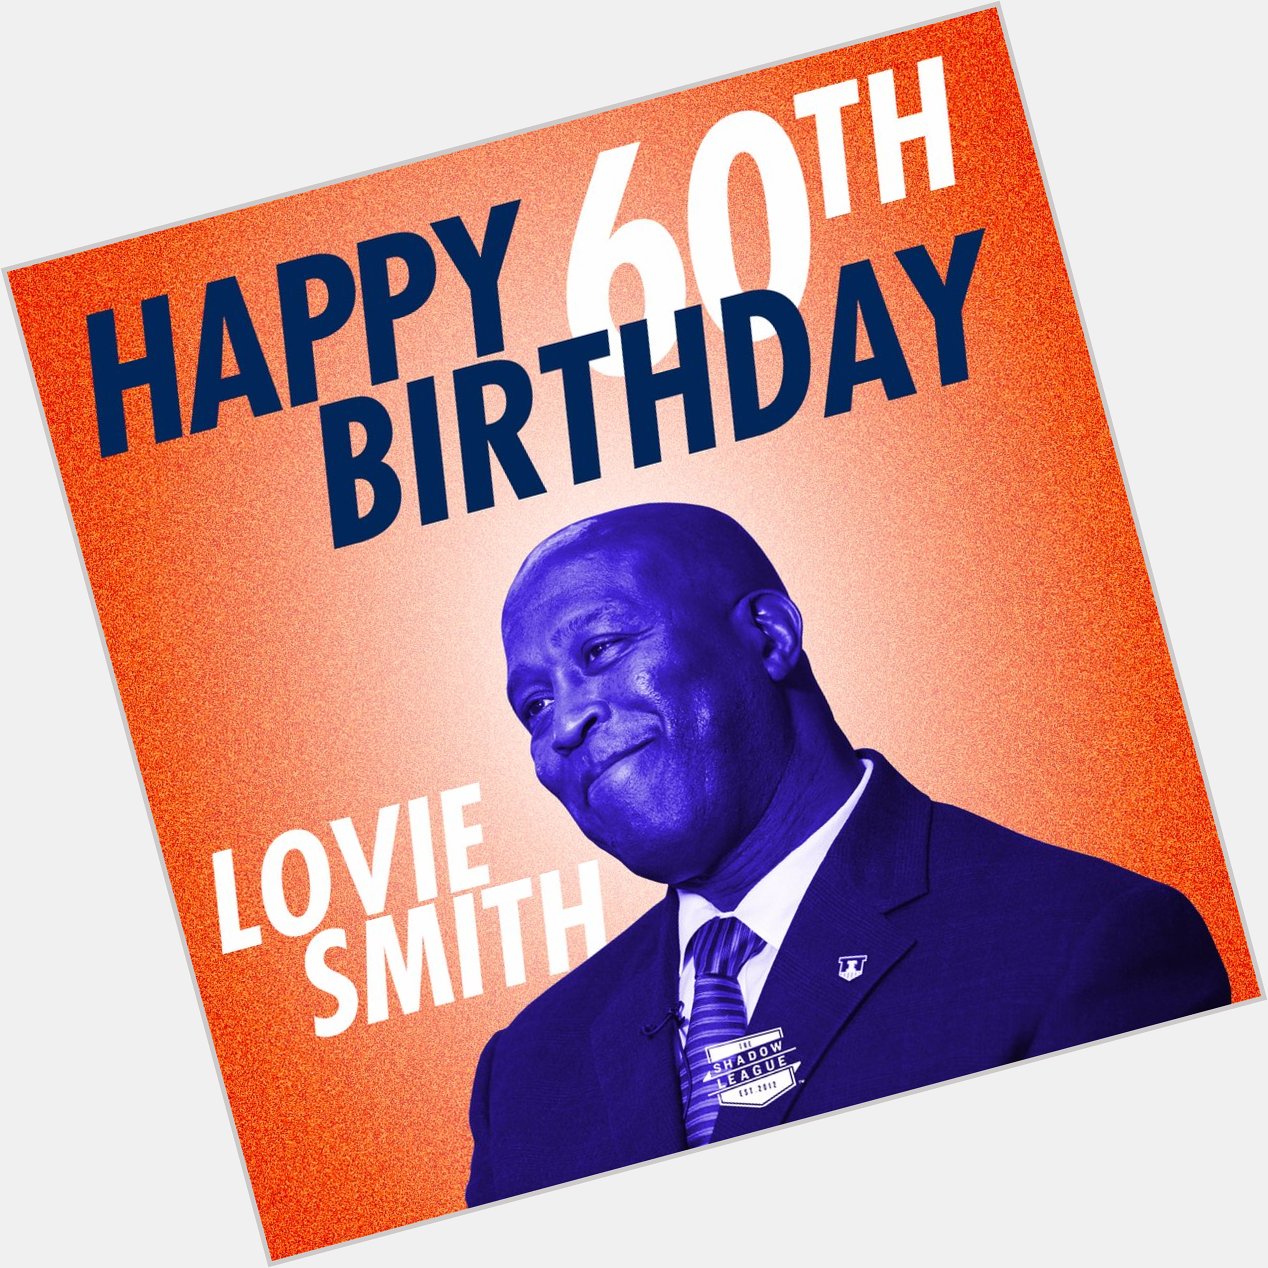 Happy Birthday to Lovie Smith! 